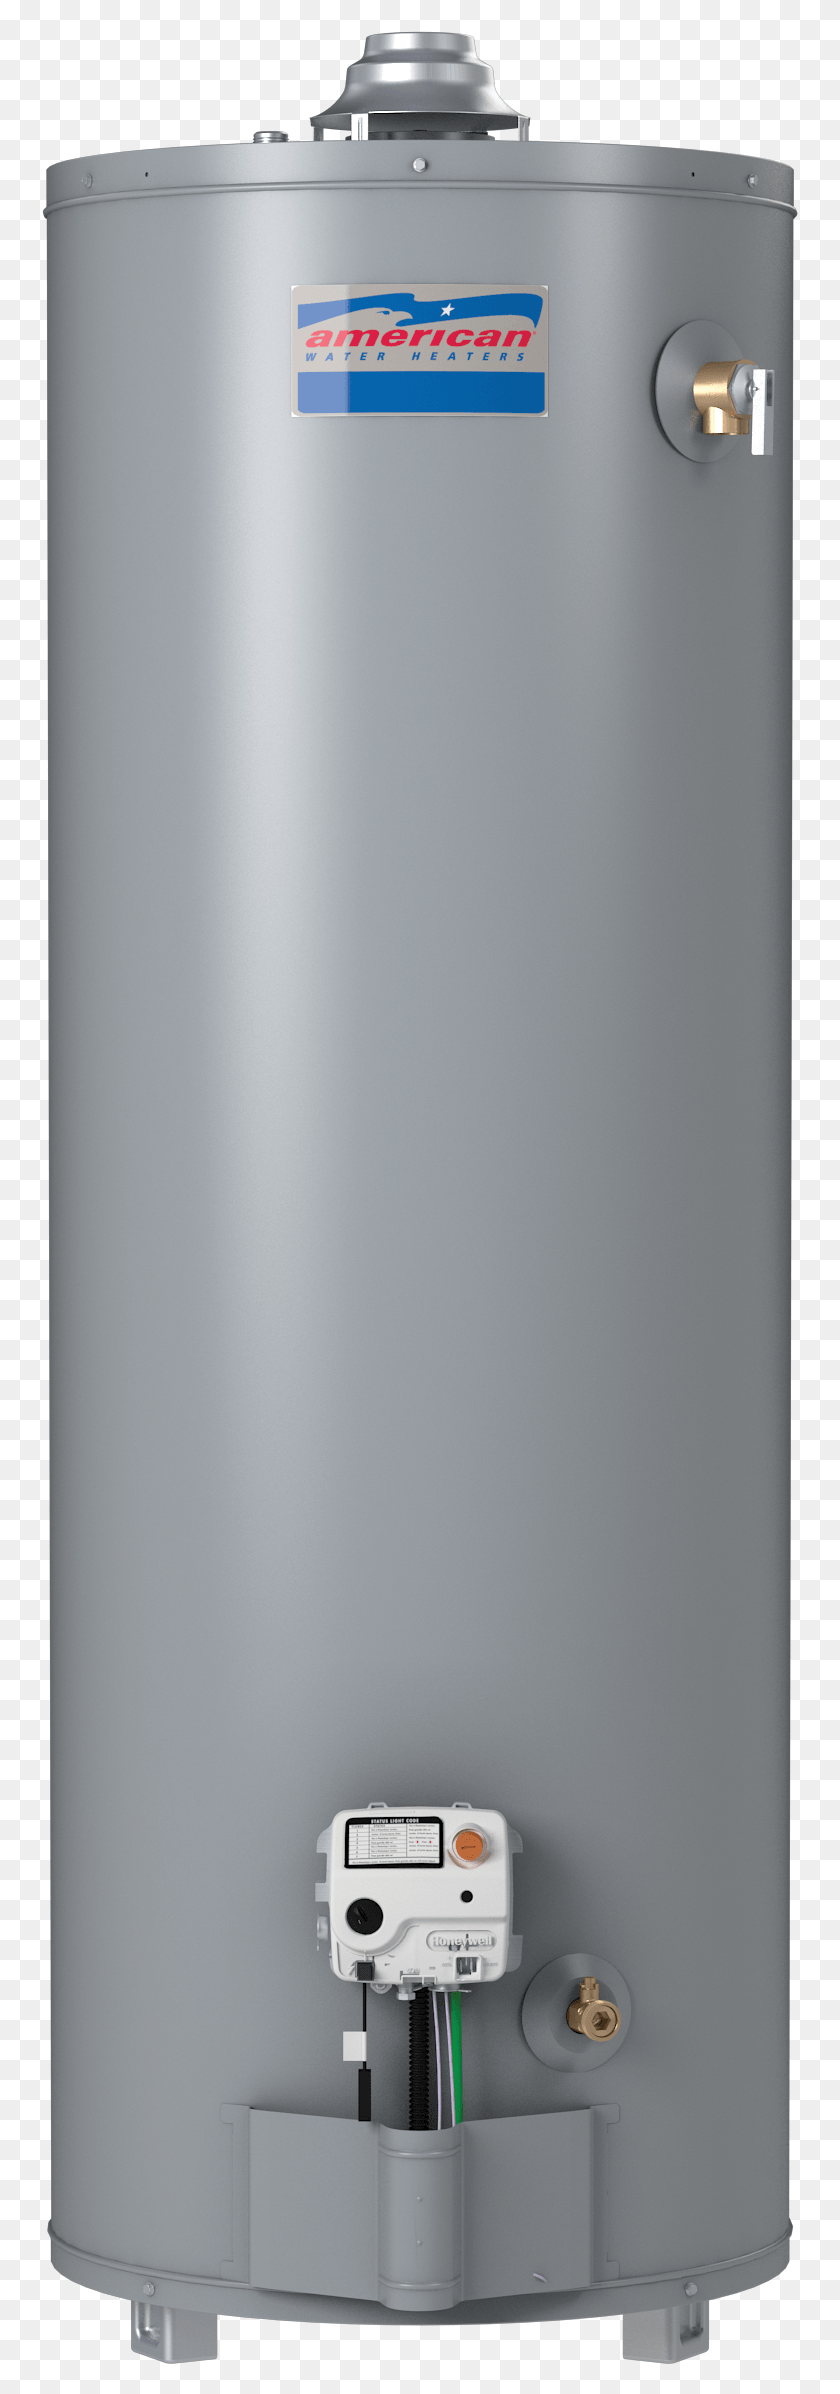 757x2334 Calentador De Agua De Gas De 150 L, Electrodomésticos, Refrigerador, Lavavajillas Hd Png